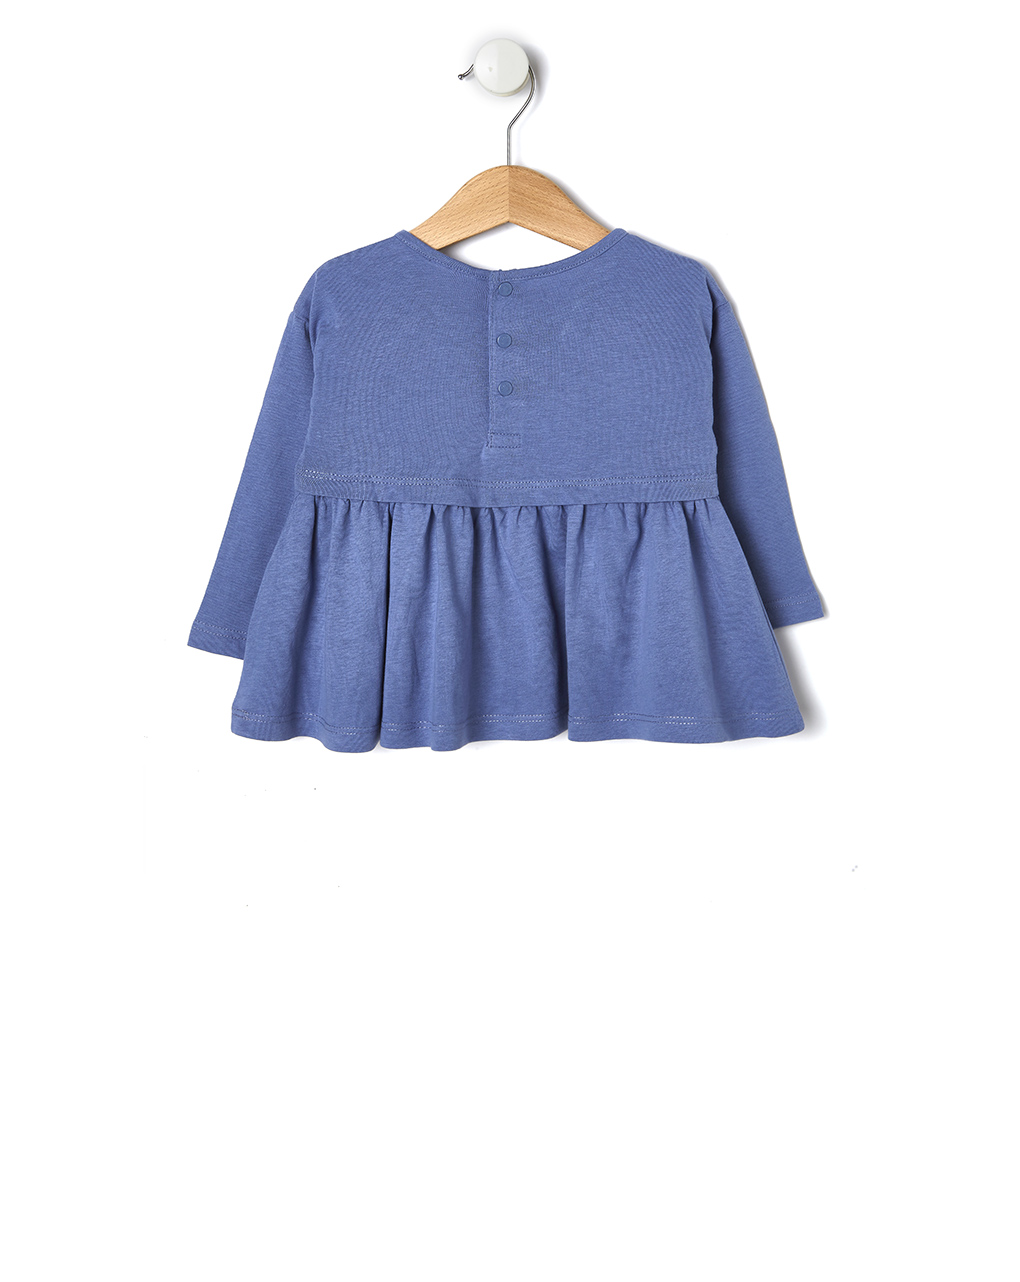 μπλούζα μακρυμάνικη με παγιέτες μπλε για κορίτσι - Prénatal